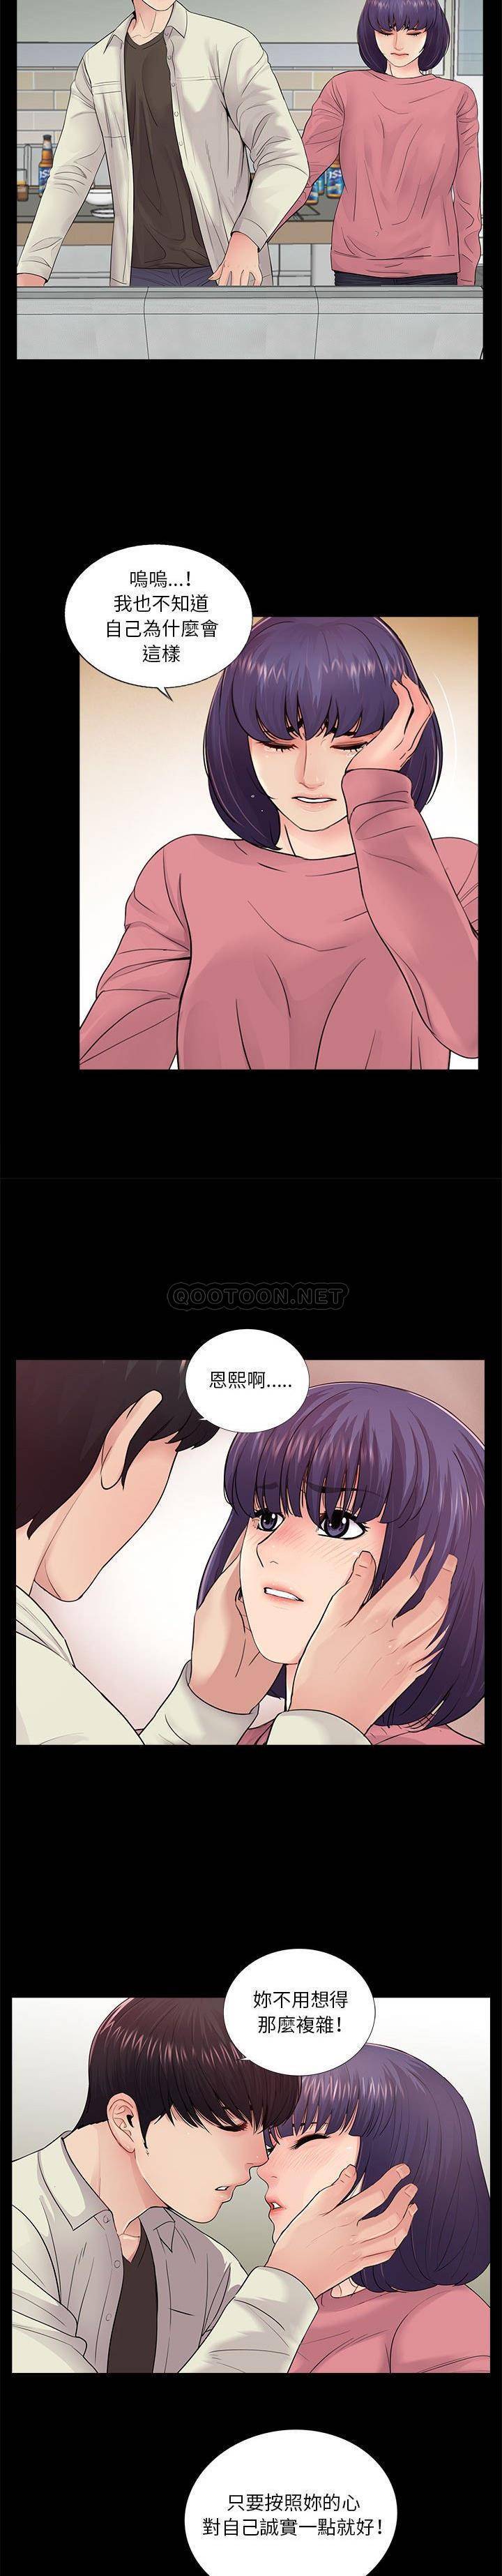 韩国污漫画 神秘復學生 第15话 6